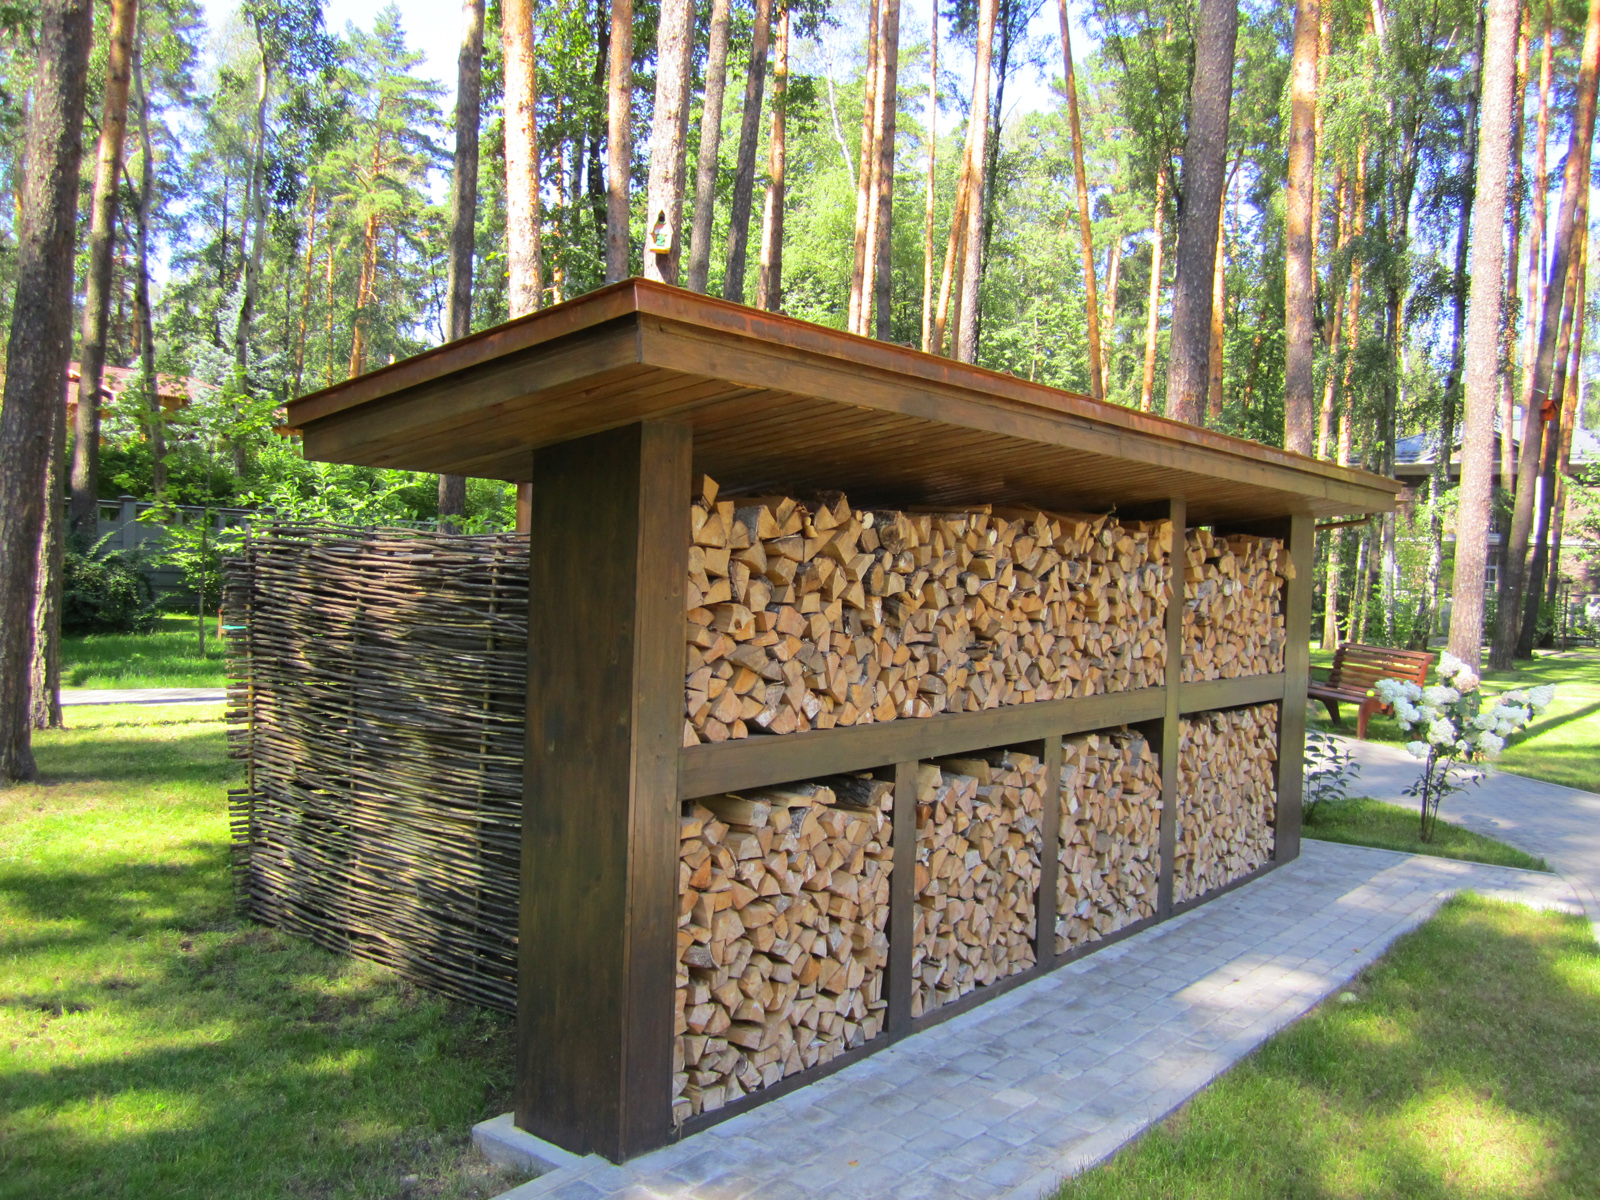 Как построить дровяник на даче своими руками — пошаговая инструкция